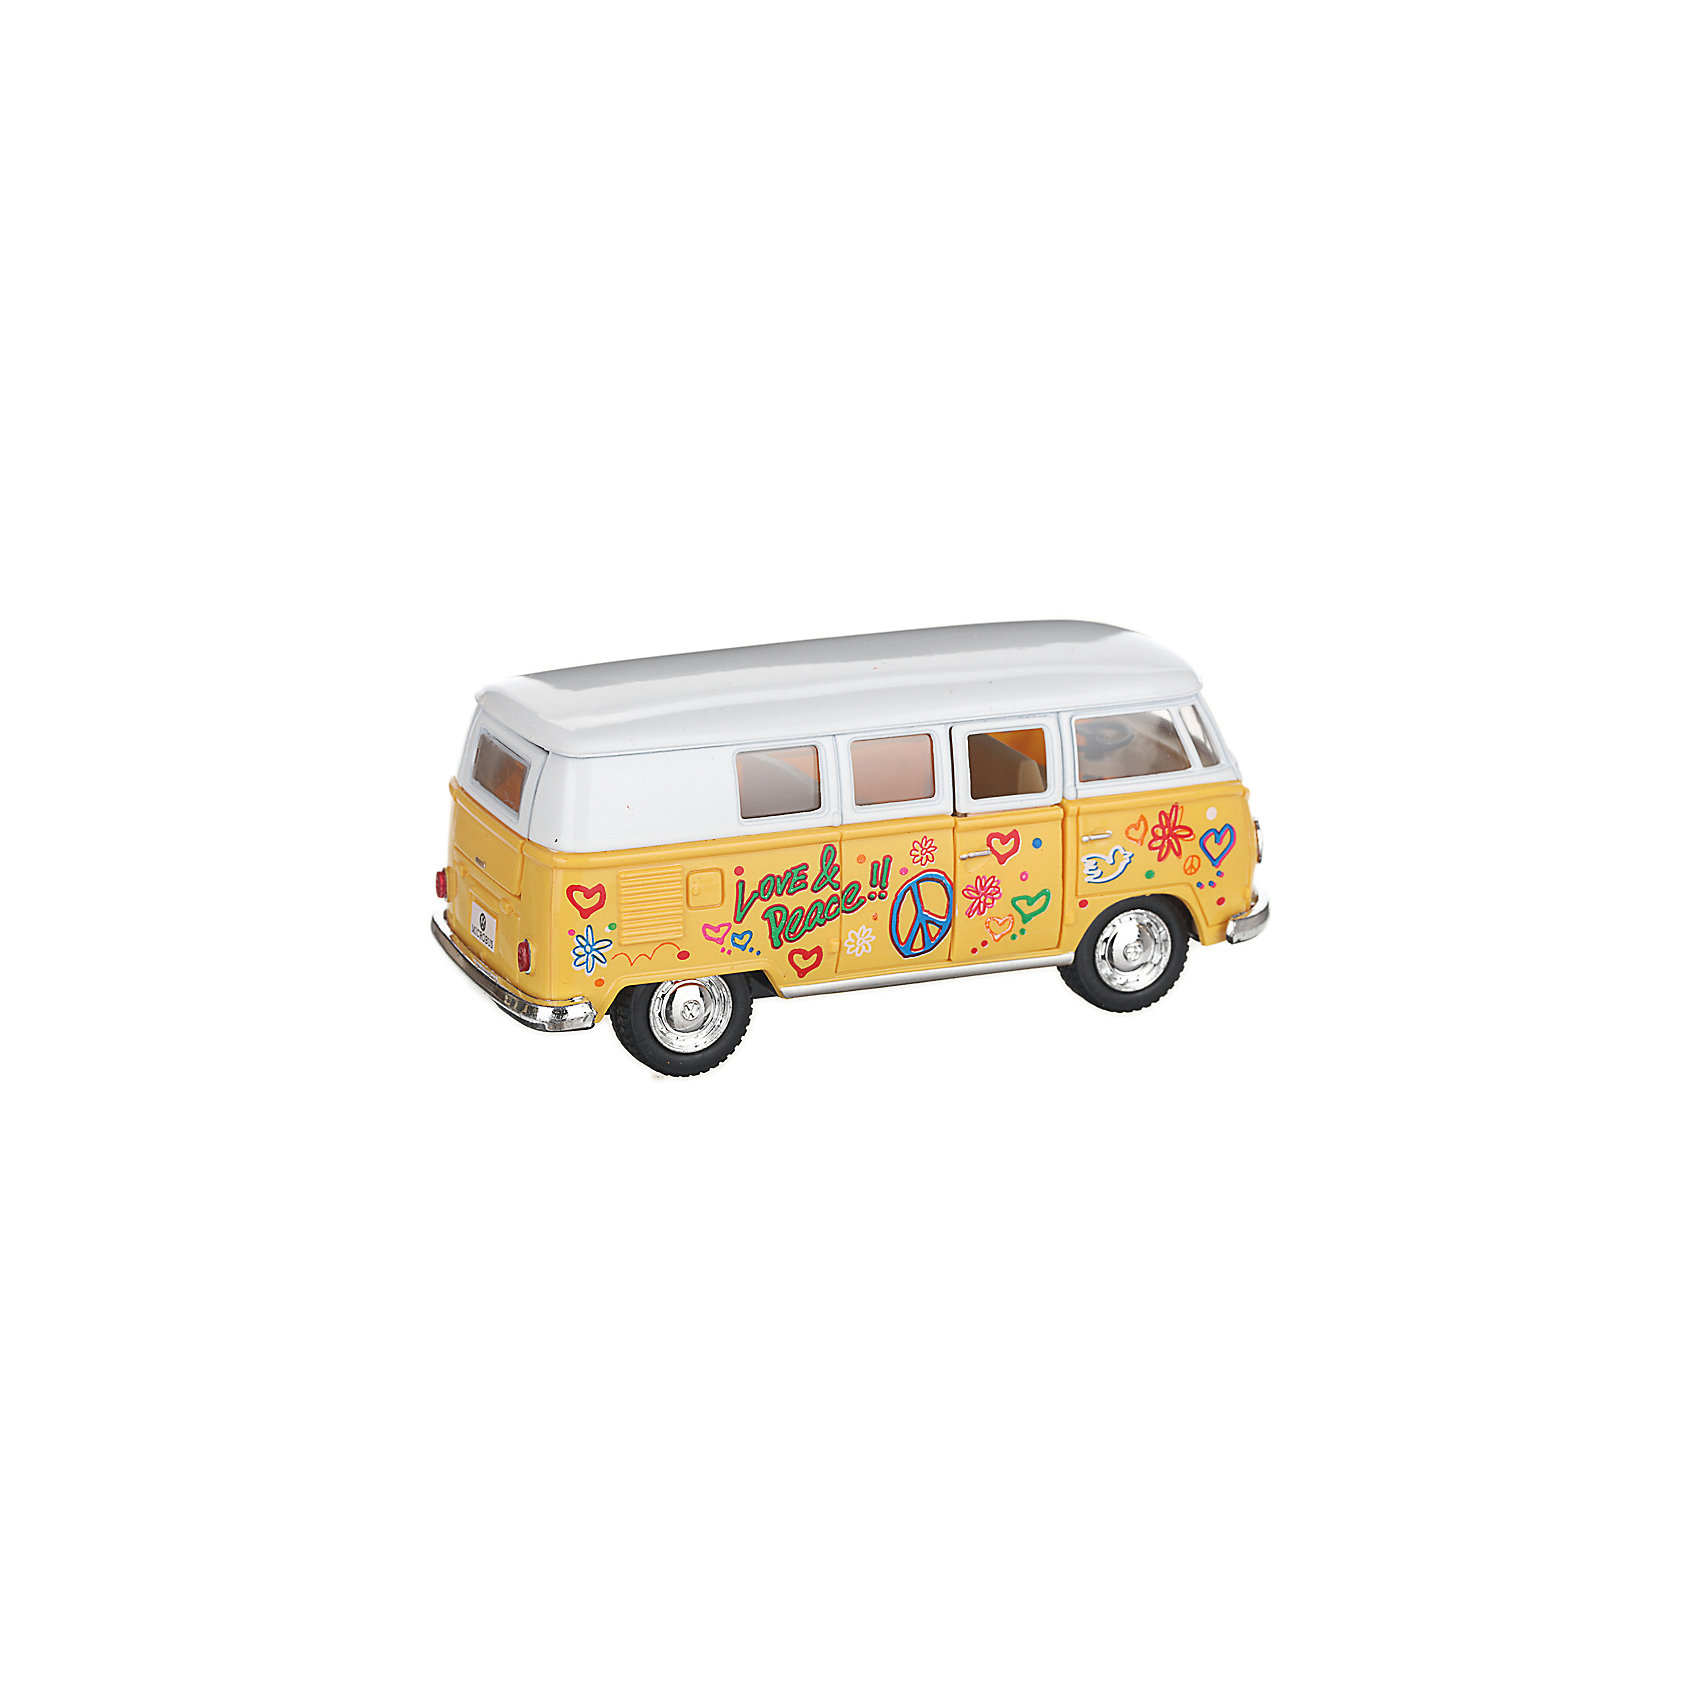 фото Металлический автобус Serinity Toys Volkswagen Classical раскрашенный, жёлтая